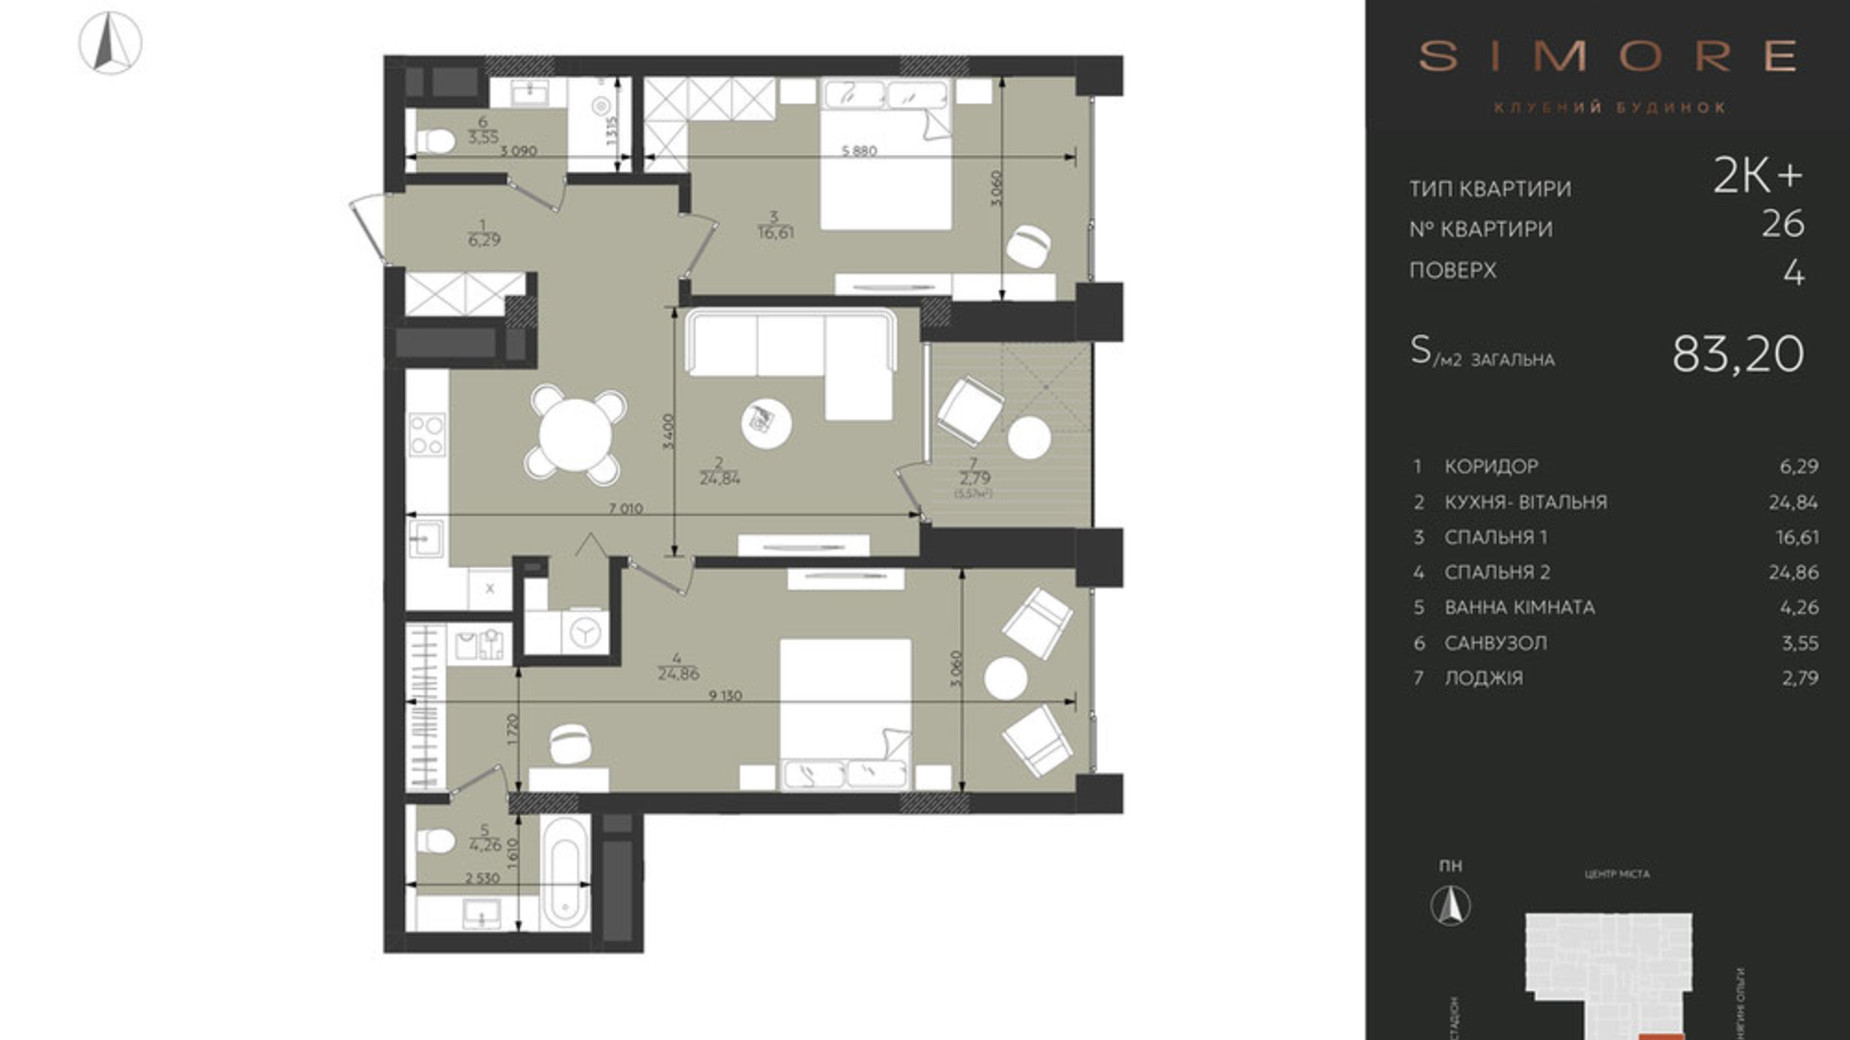 Планування 2-кімнатної квартири в Клубний будинок Simore 83.2 м², фото 694209